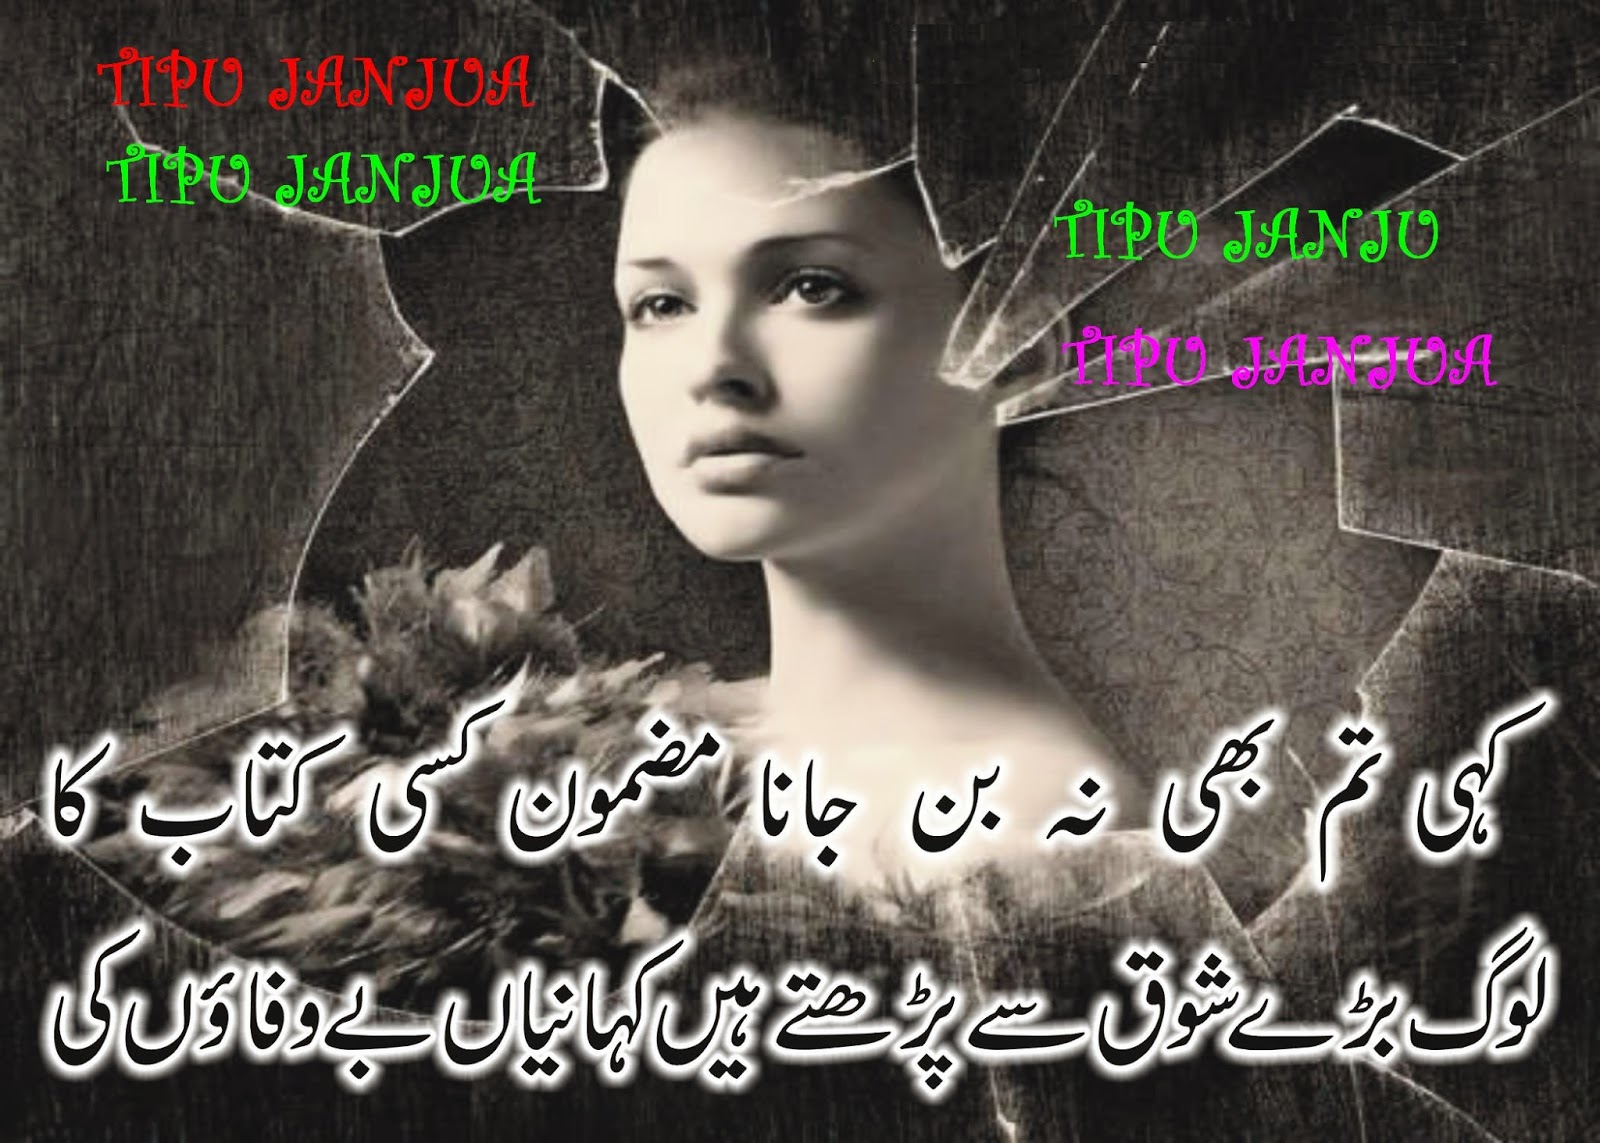 MediaPhilospherAll Media In 3Gp: Urdu Poetry Imeges HD ...